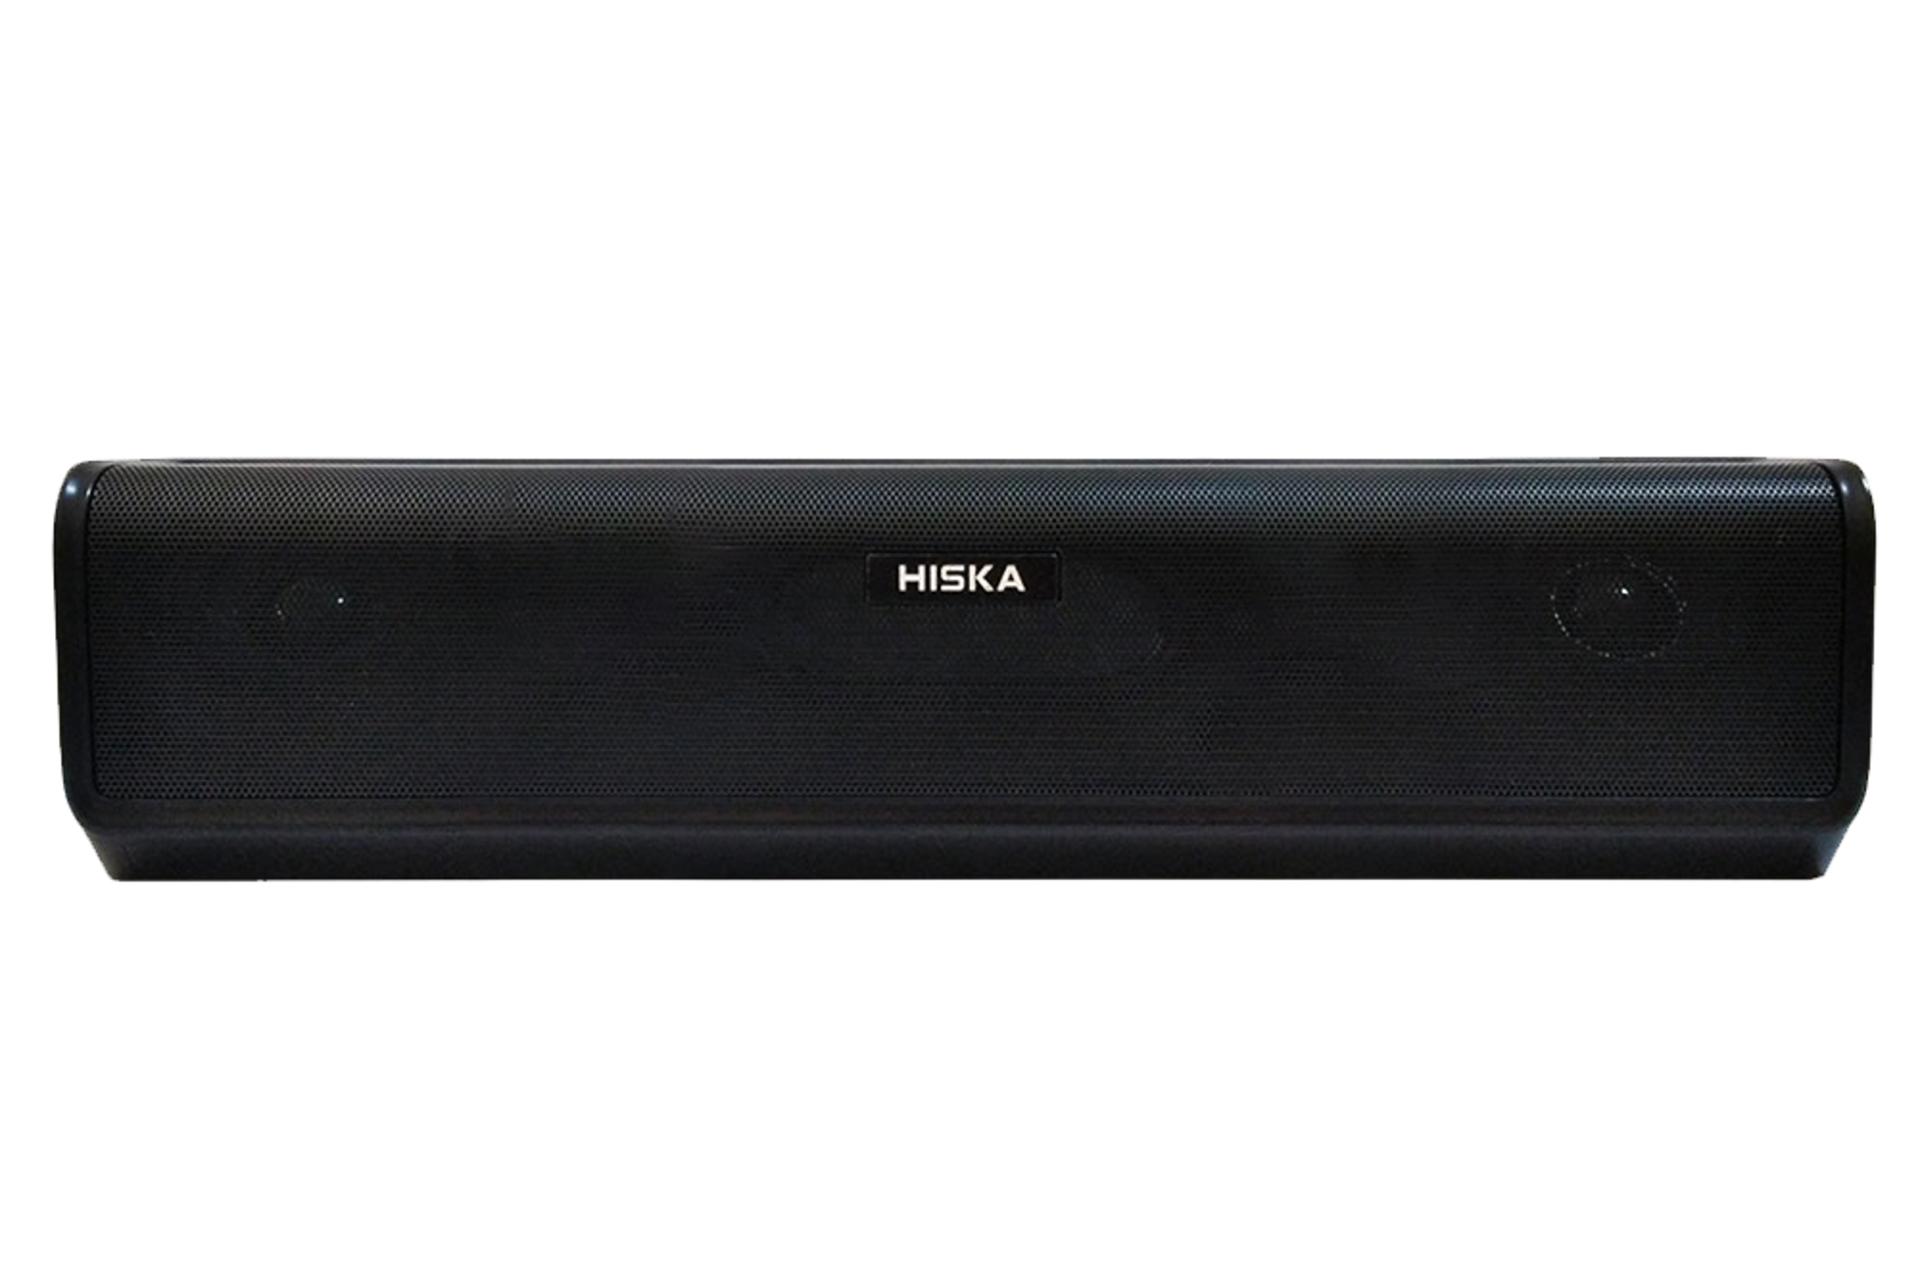 ابعاد اسپیکر هیسکا HISKA B52